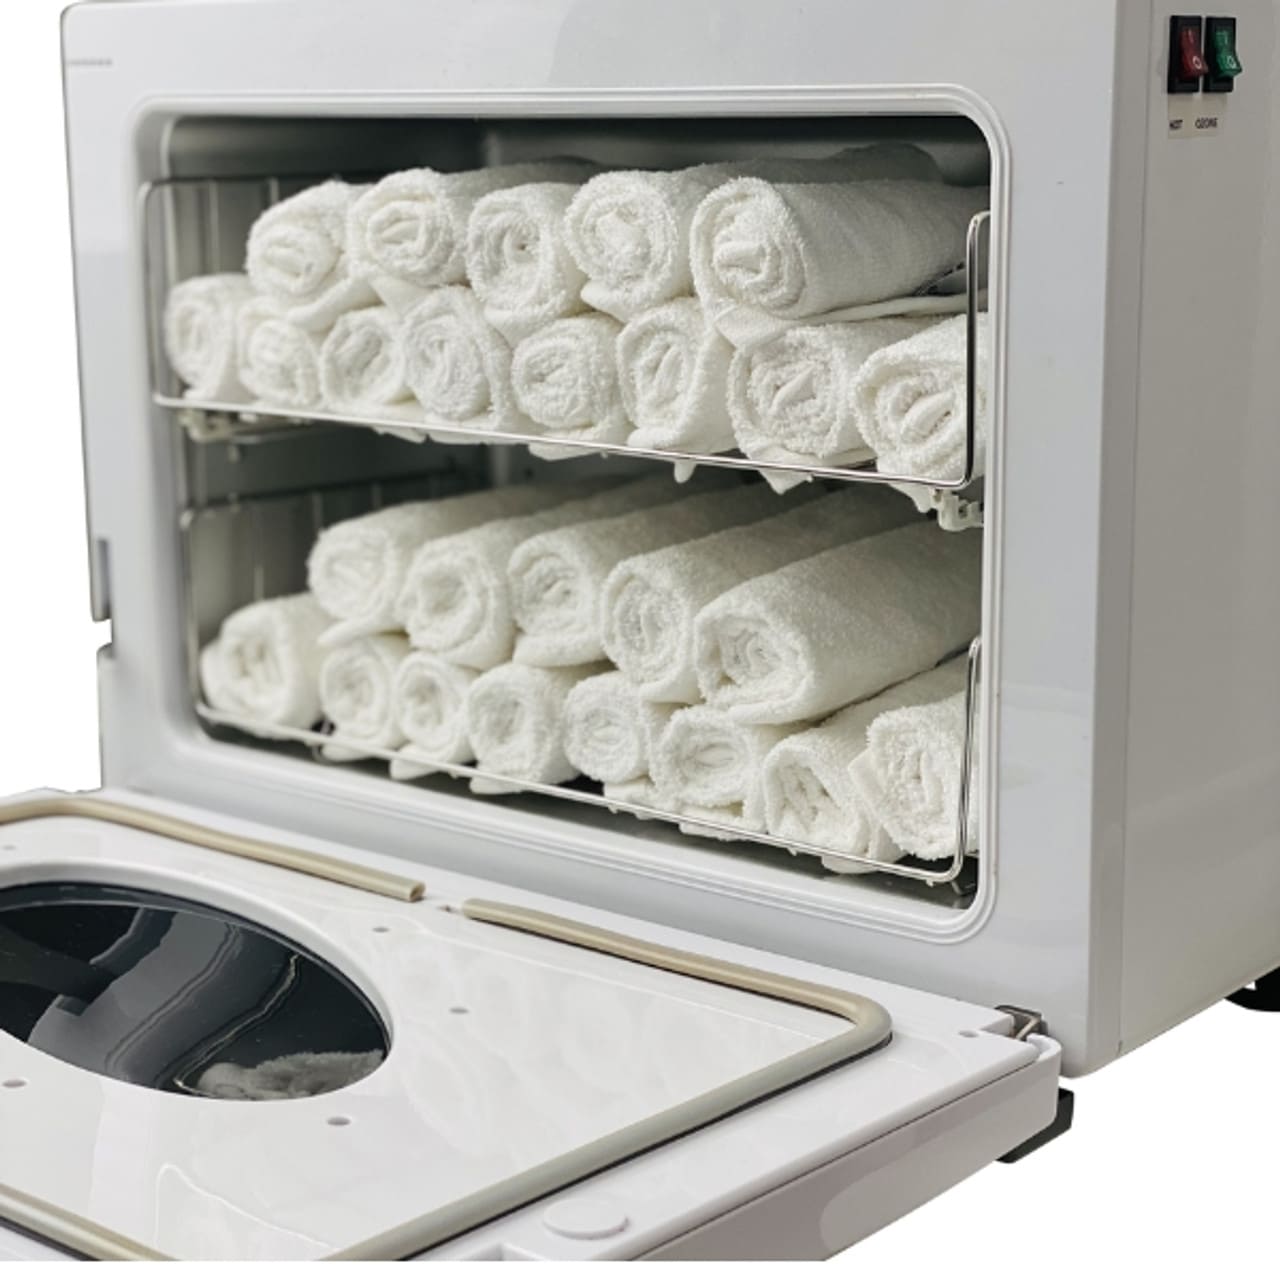 Joiken Opal hot towel cabinet ozone showing towels inside - Luna Beauty Supplies